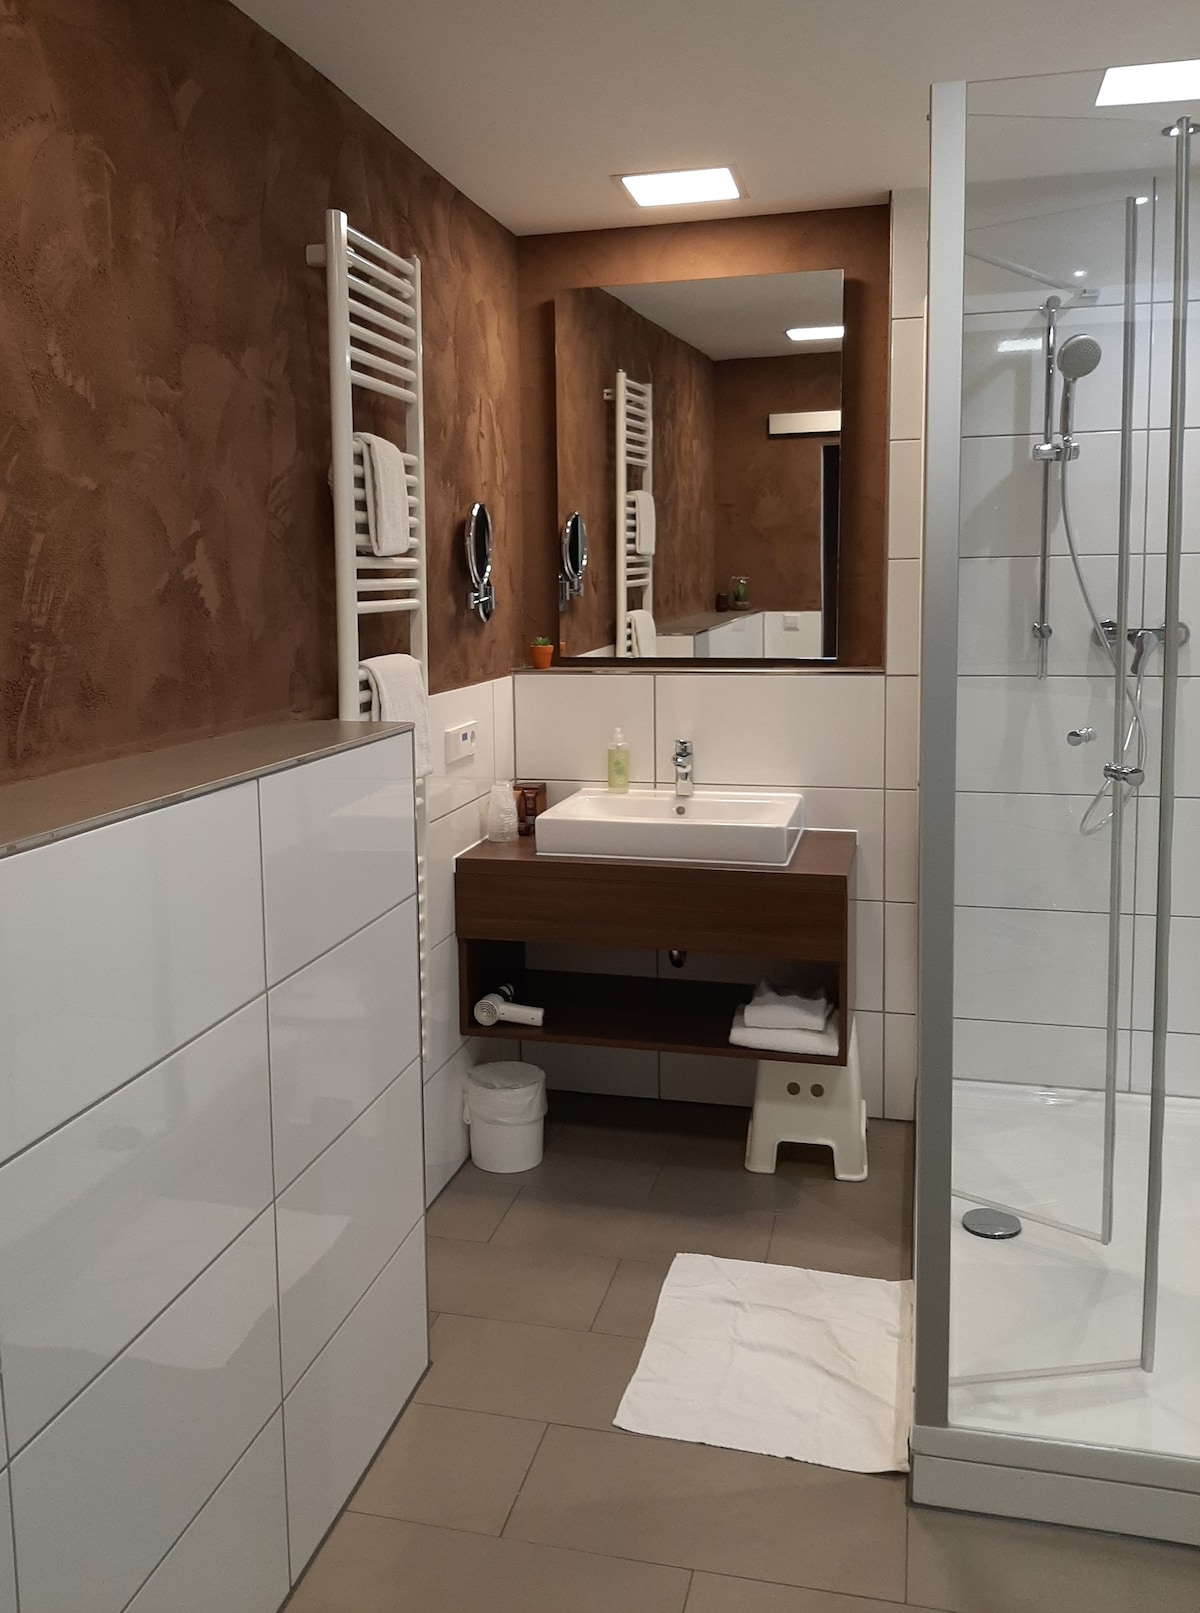 Lobinger Hotel-Weißes Ross, (Langenau), Dreibettzimmer mit Dusche und WC